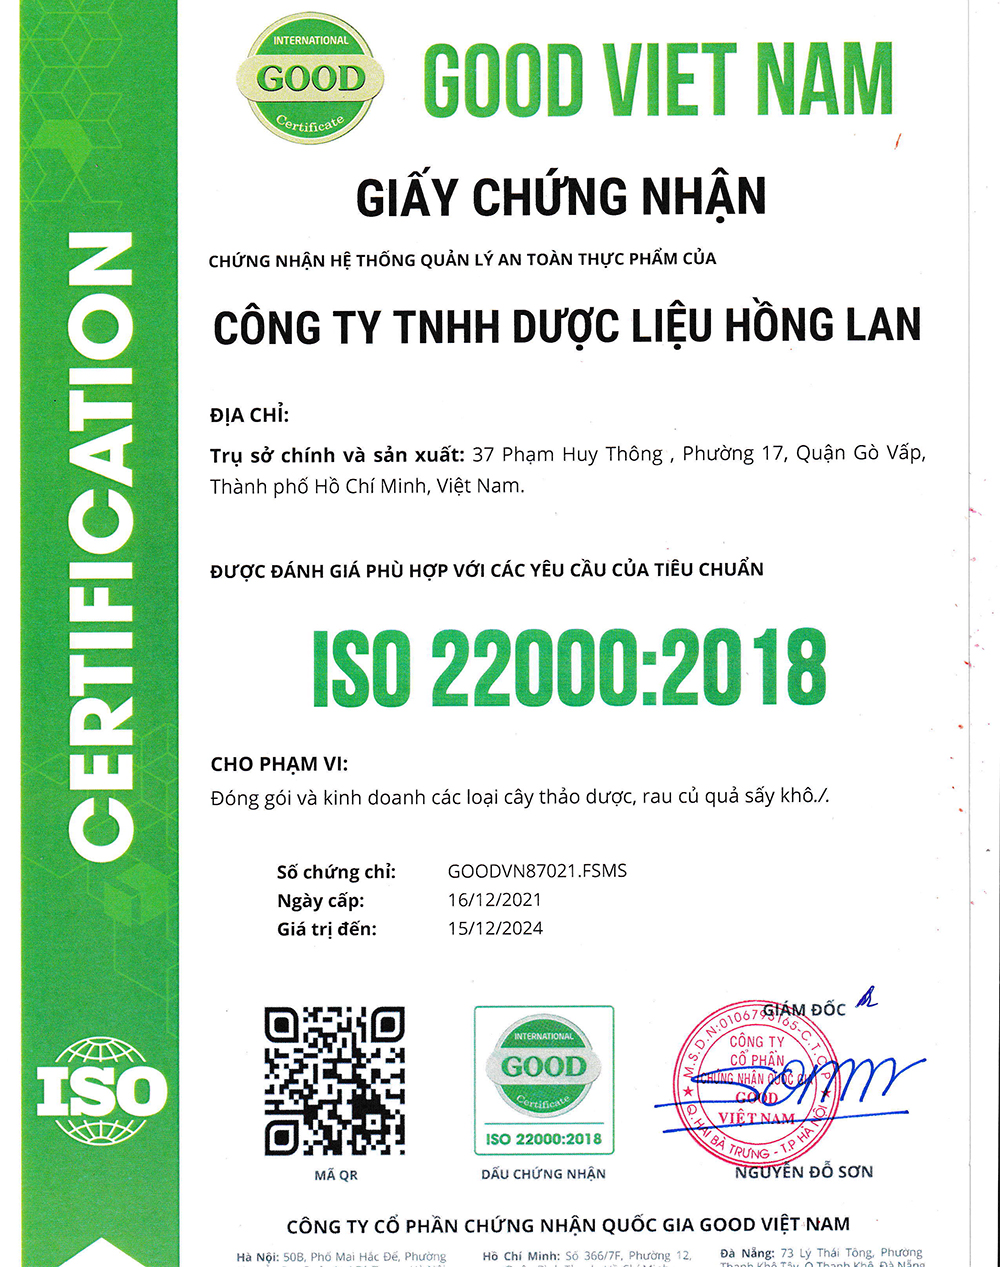 Trà túi lọc Cây Rau Sam được sản xuất bởi Công ty TNHH Dược Liệu Hồng Lan theo hệ thống quản lý an toàn thực phẩm ISO 22000:2018 được cấp bởi công ty cổ phần chứng nhận Quốc Gia Good Việt Nam (Good Viet Nam Certification Joint Stock Company)